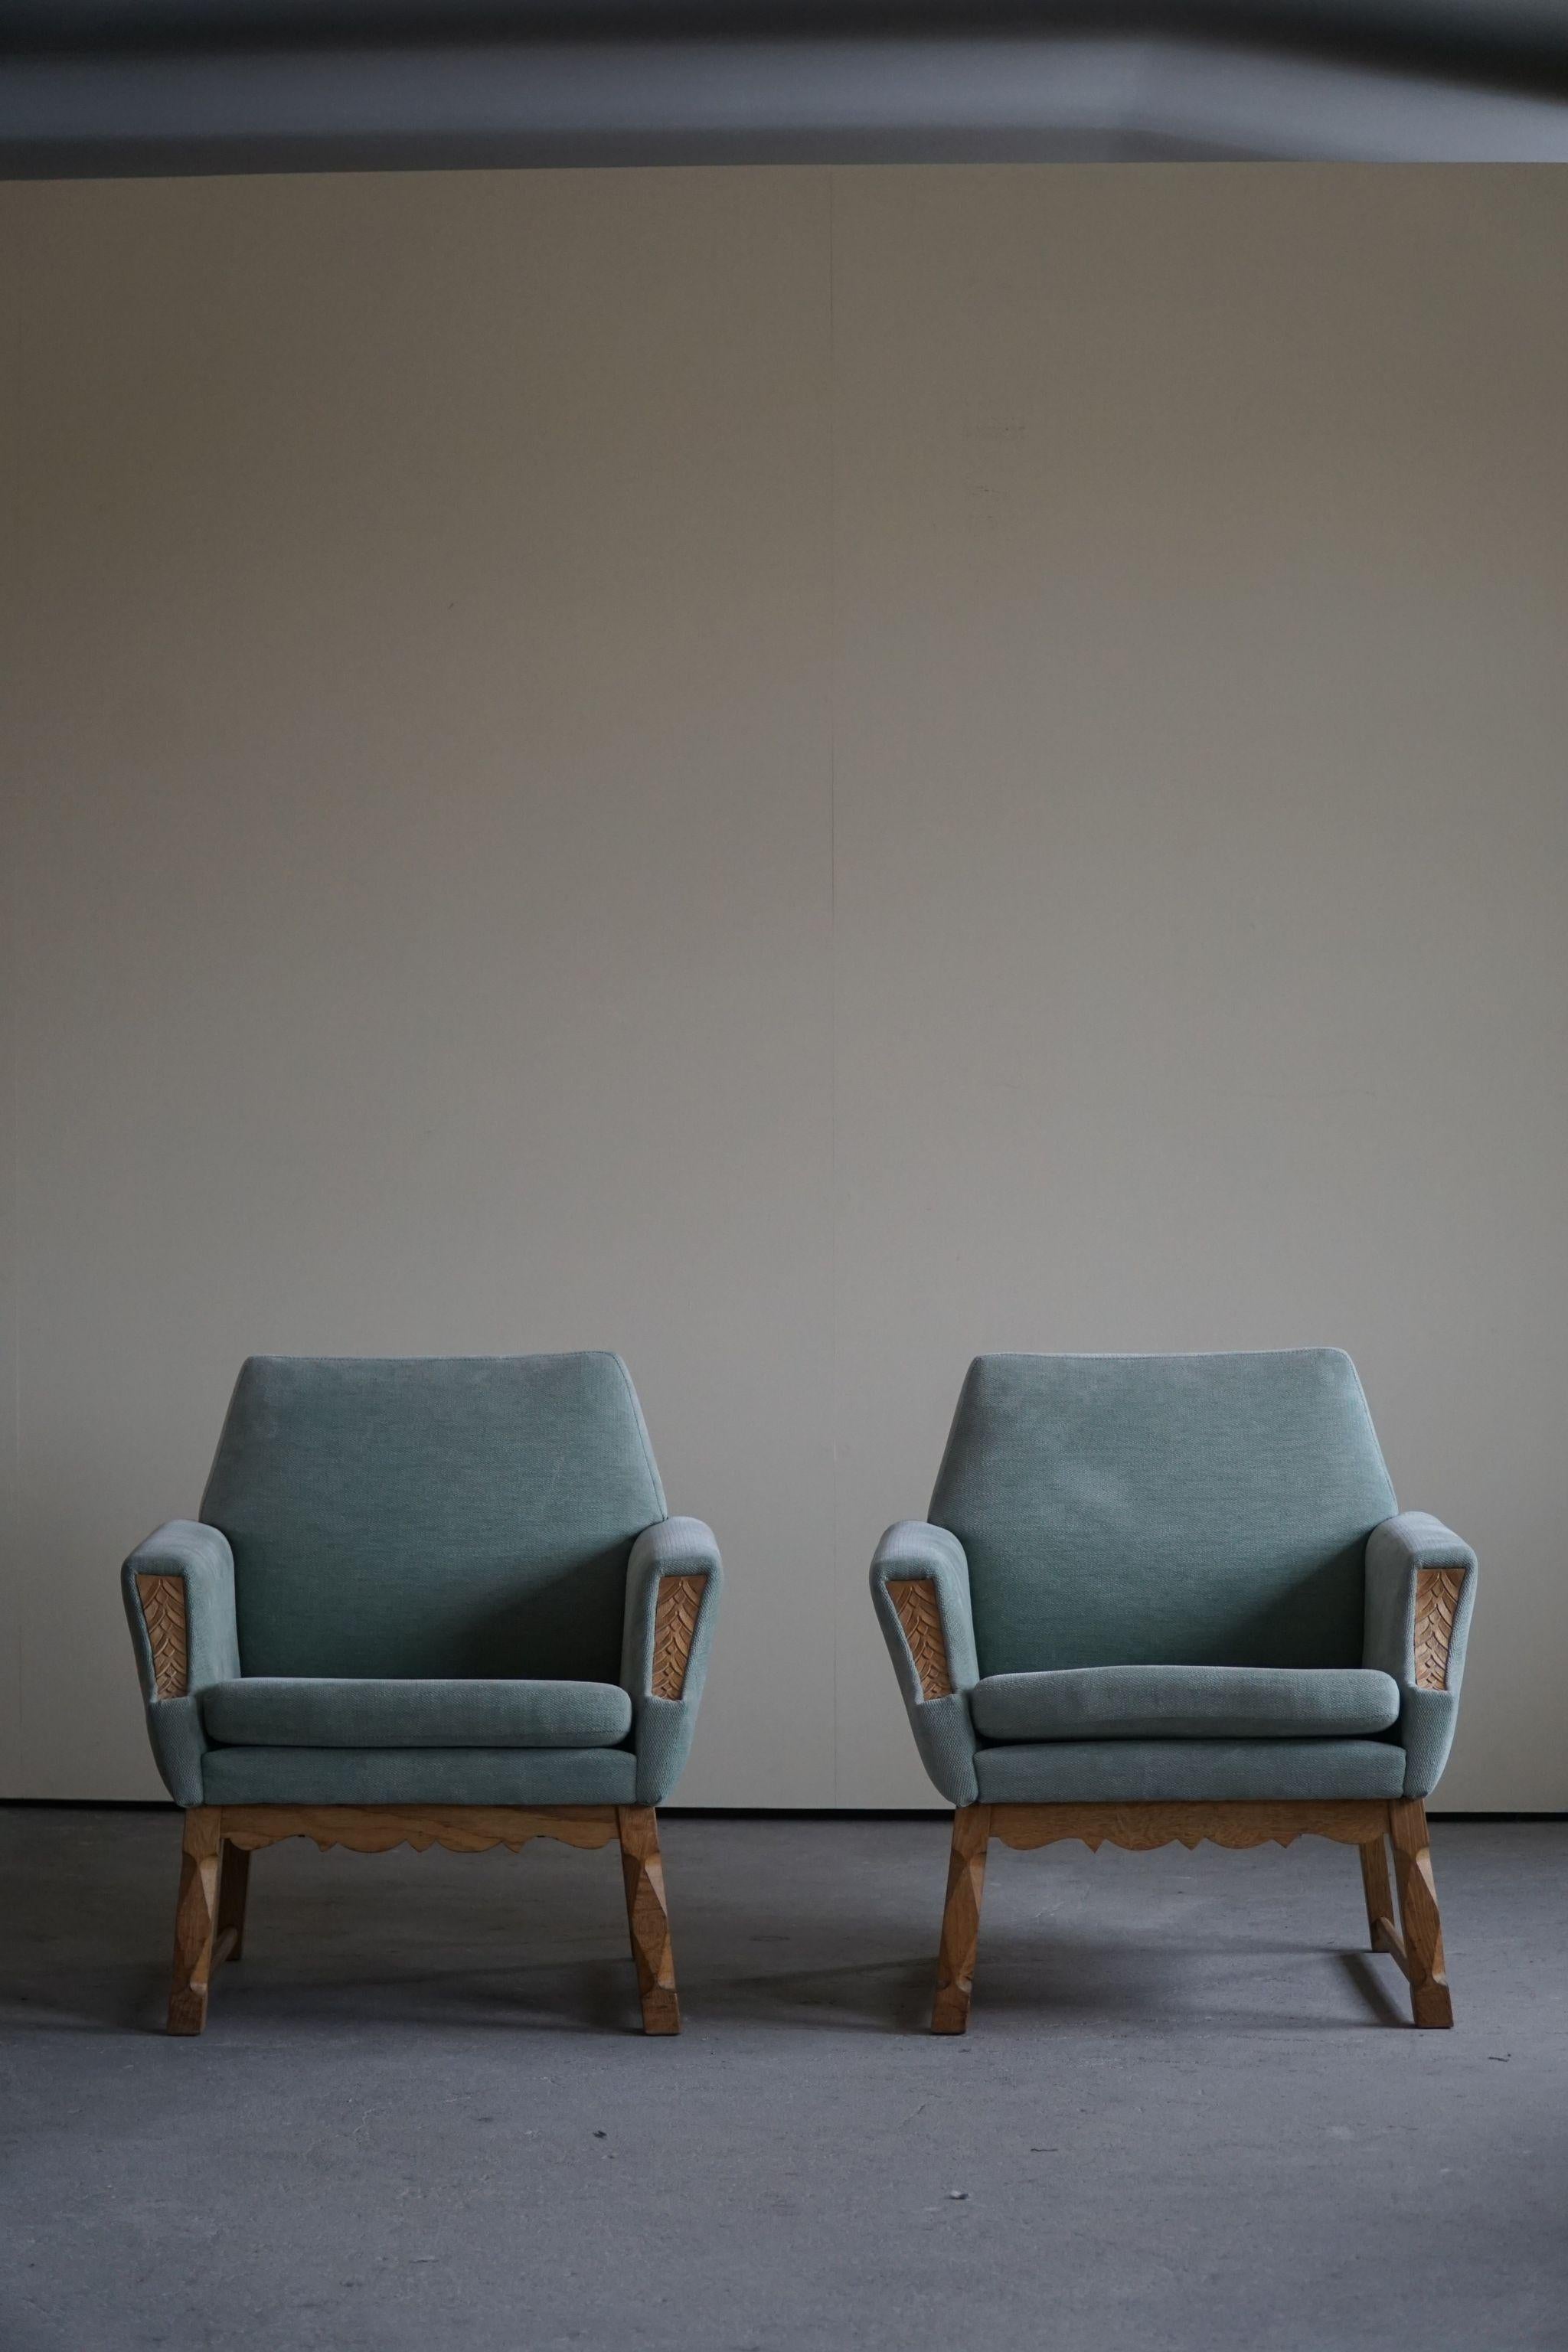 20th Century Danish Modern Pair of Lounge Chair, Turquoise Velvet & Oak, Cabinetmaker, 1960s